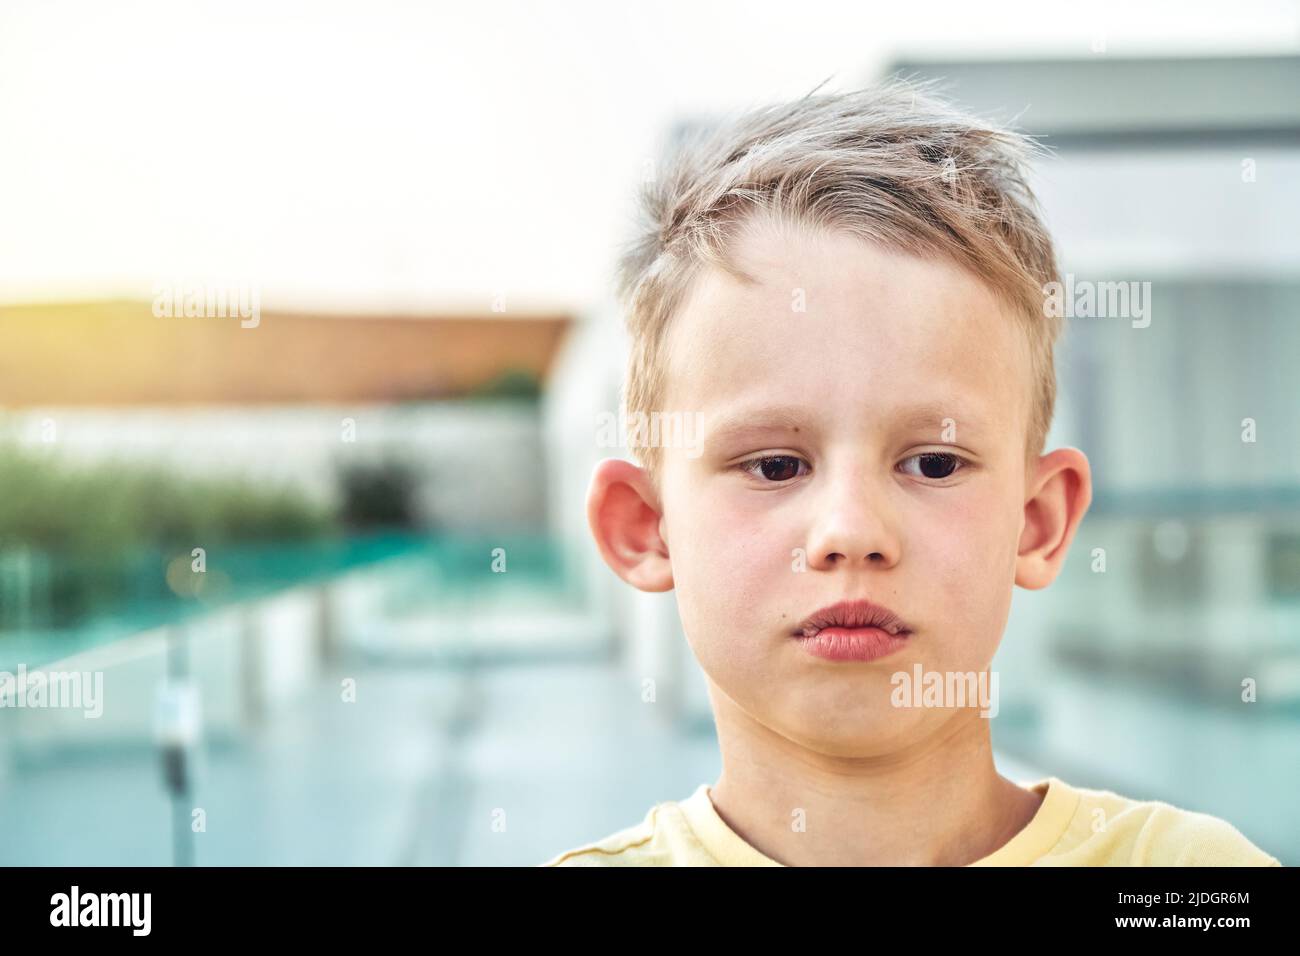 Portrait d'un élève triste avec des cheveux blonds sur un arrière-plan flou. Un petit garçon mignon a l'air de se tenir debout contre le territoire de l'hôtel à proximité de la station Banque D'Images